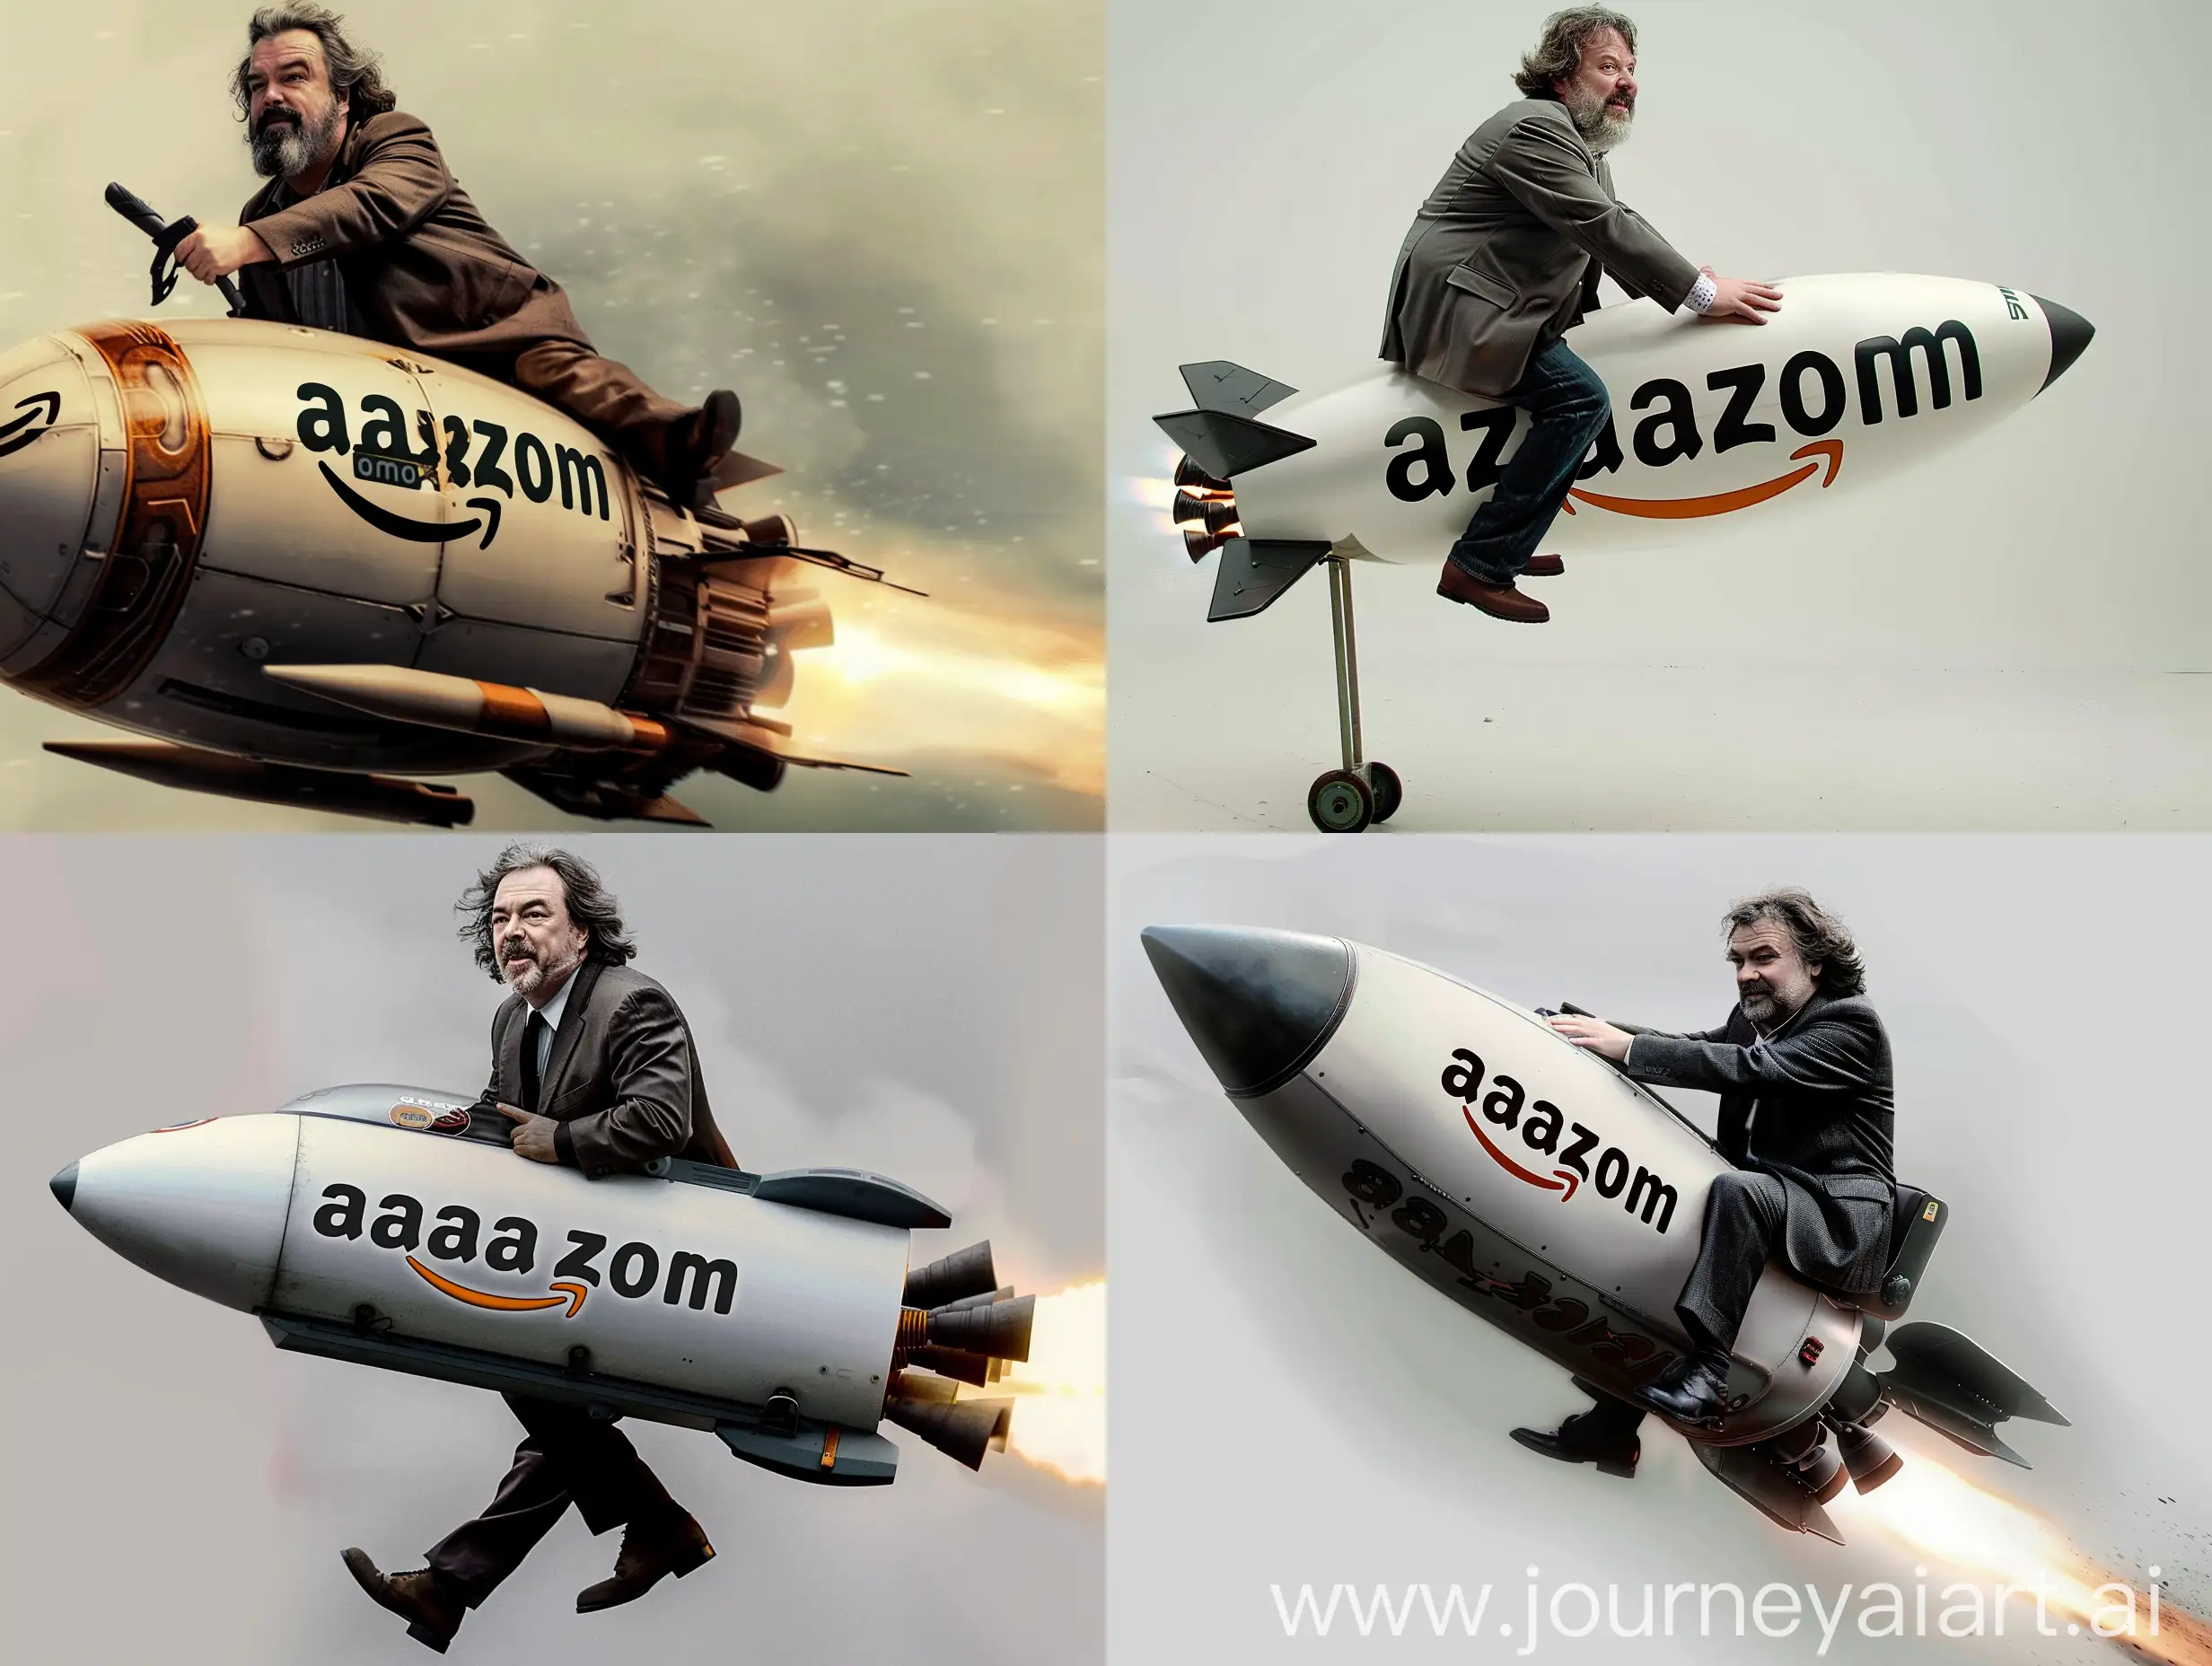 Peter-Jackson-Riding-Rocket-with-Amazoncom-Logo